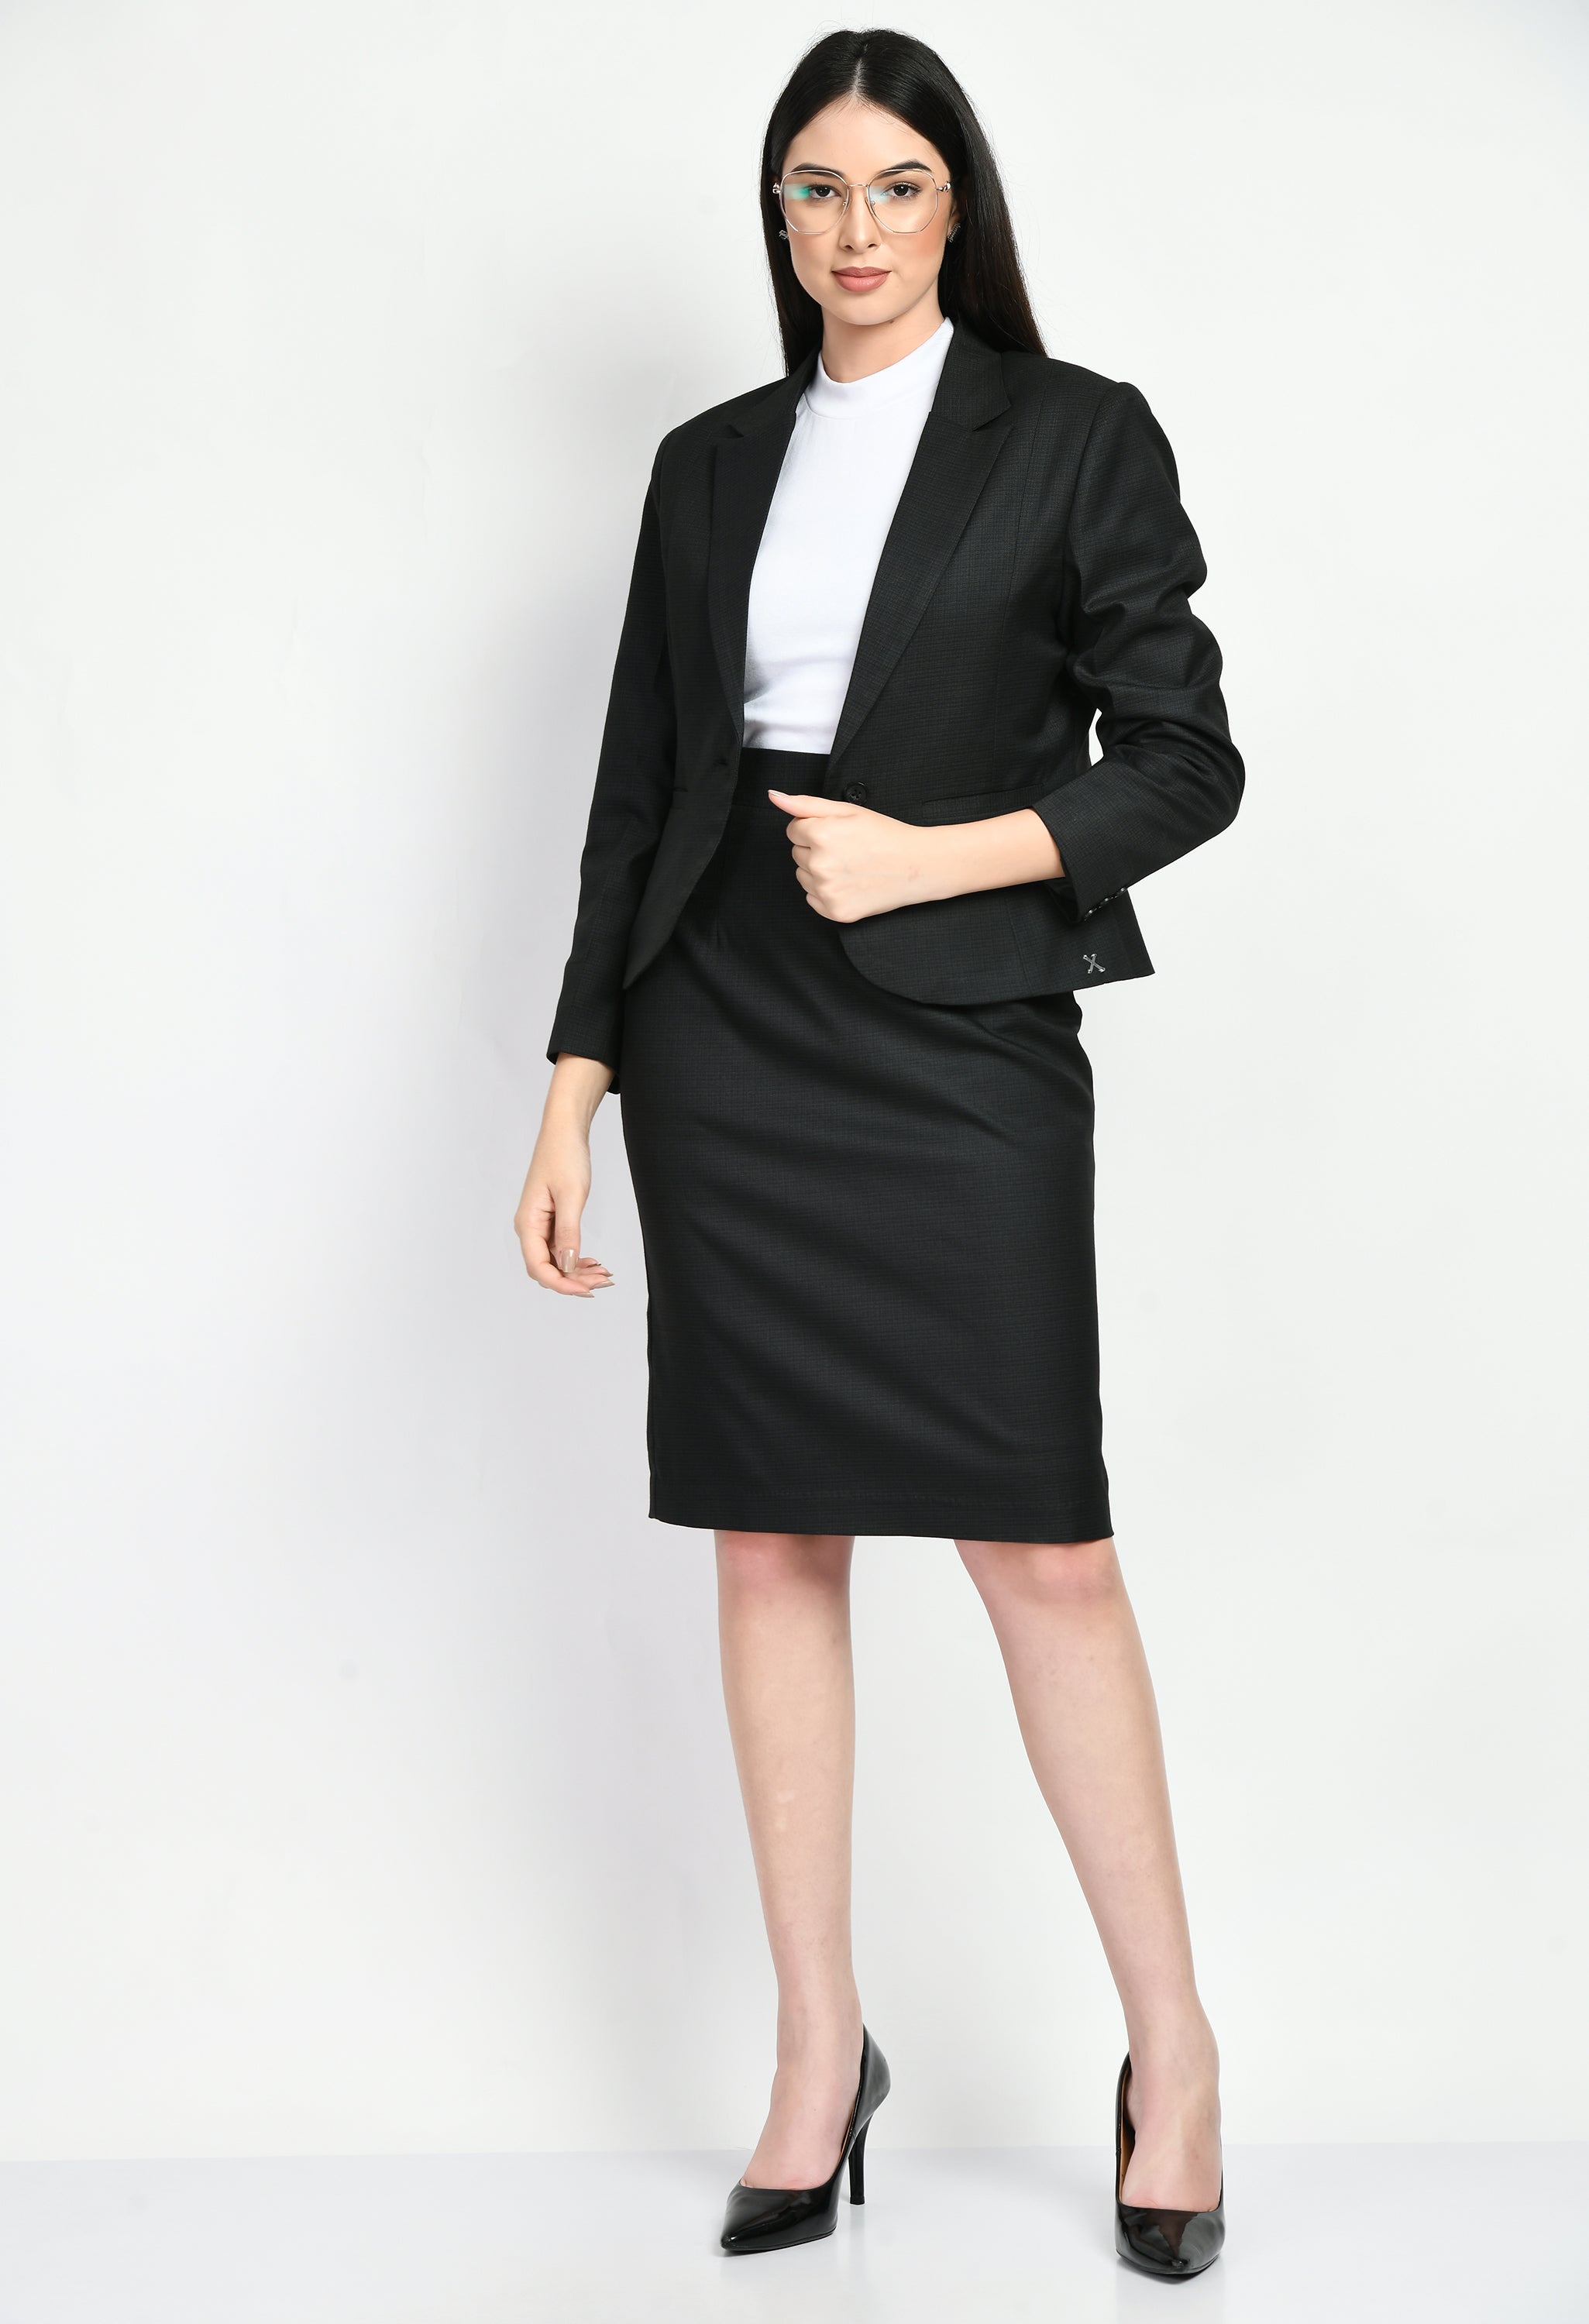 Women Black Blazer and Skirt Set,2 Piece Skirt Suit Set,Office Lady Suit  Set,Wedding Guest Suit,Business Attire,Formal skirt suit